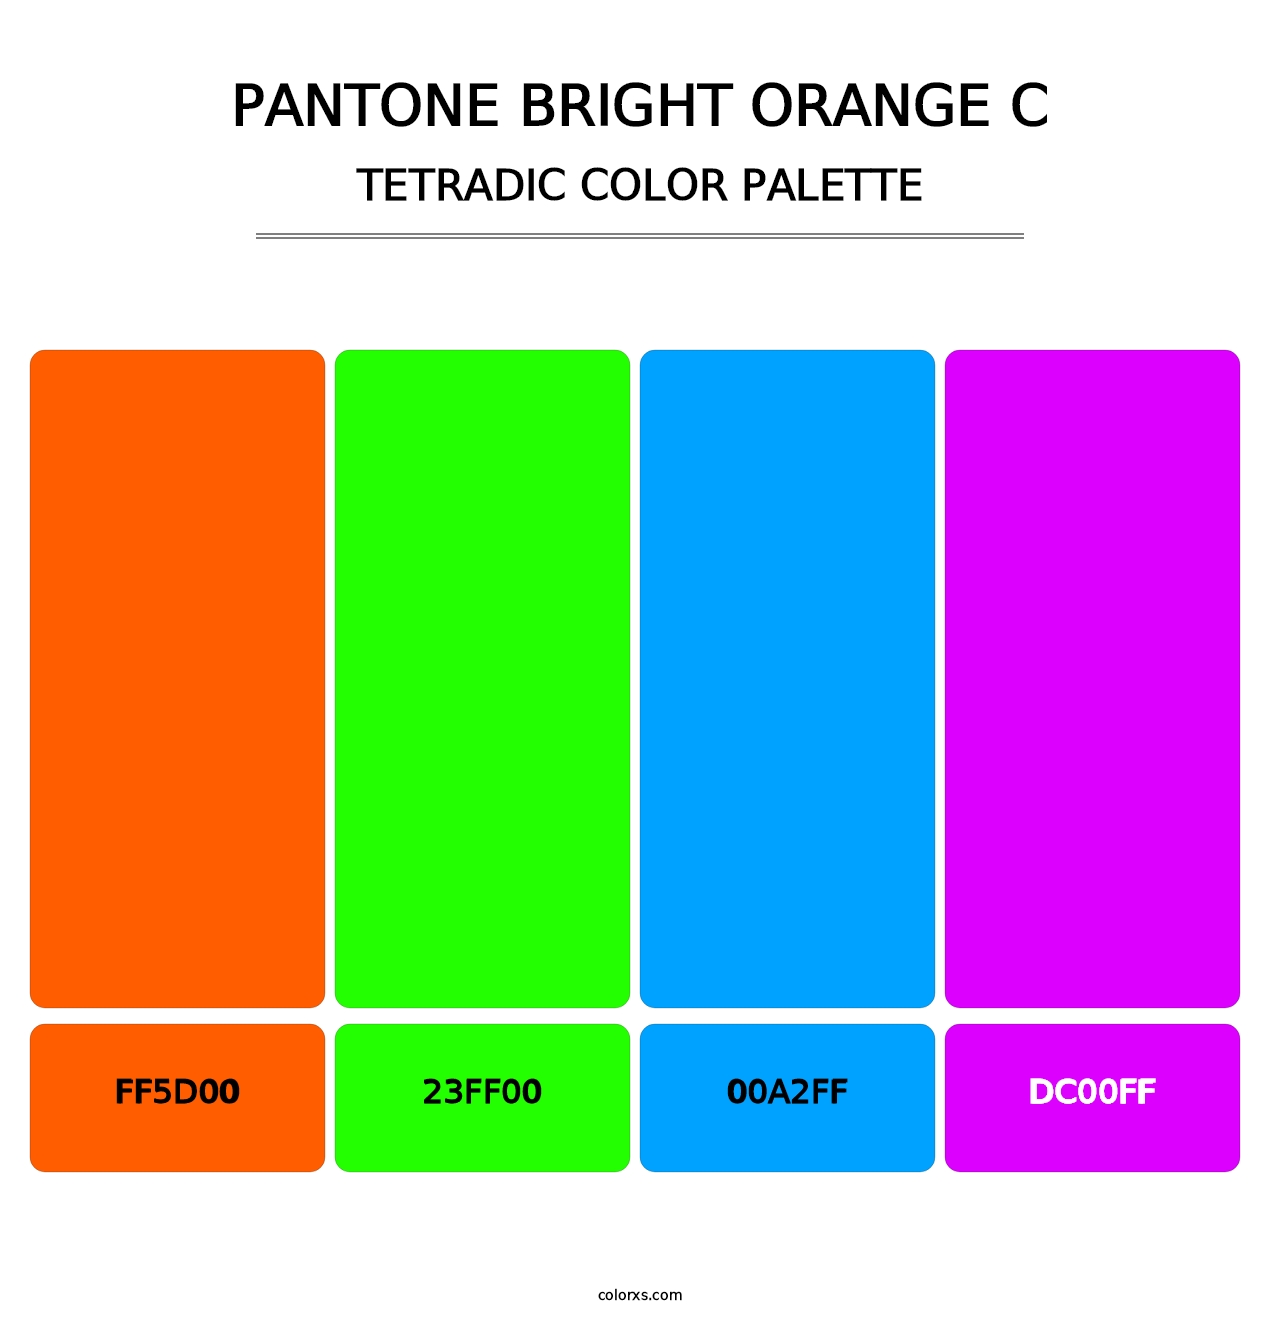 PANTONE Bright Orange C - Tetradic Color Palette